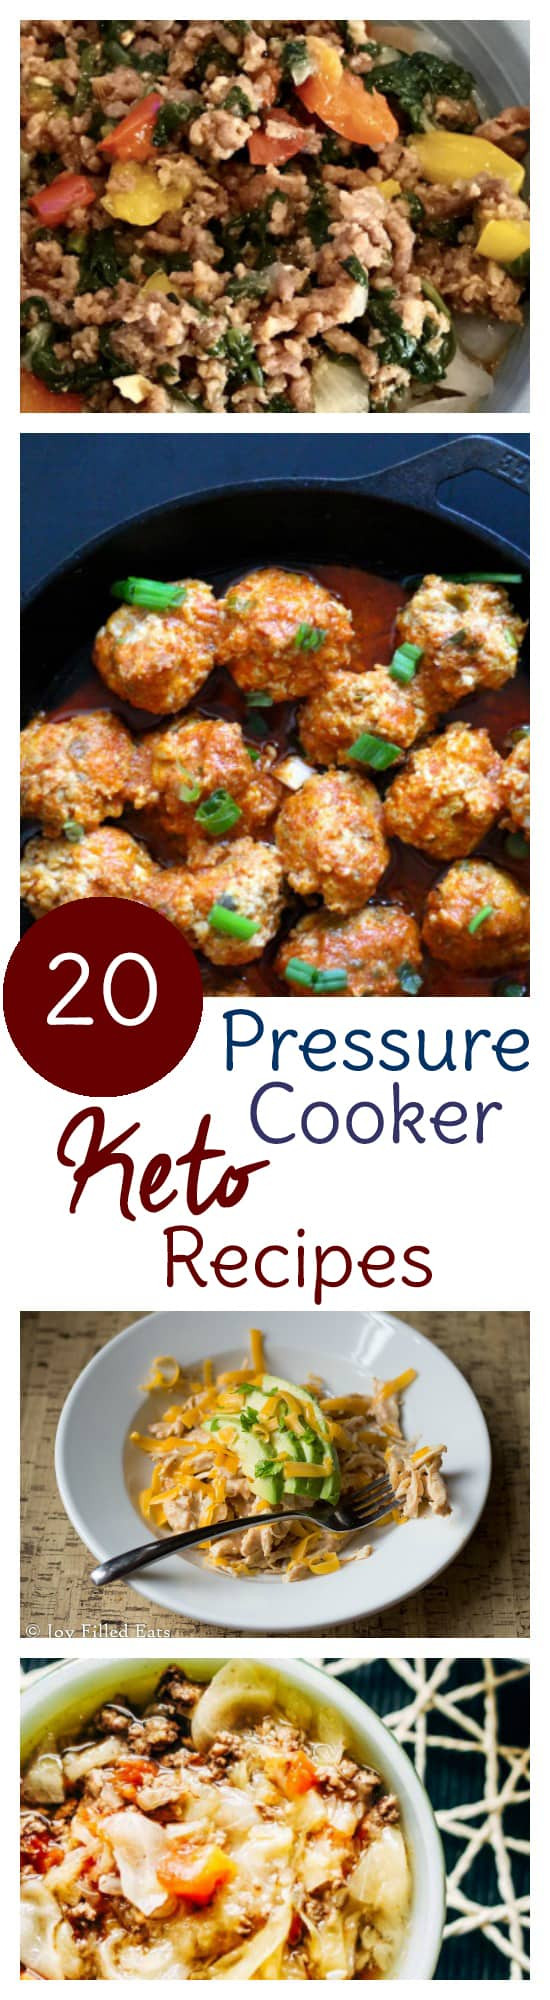 Instant Pot Low Fat Recipes
 Keto Pressure Cooker Recipes Sweet T Makes Three